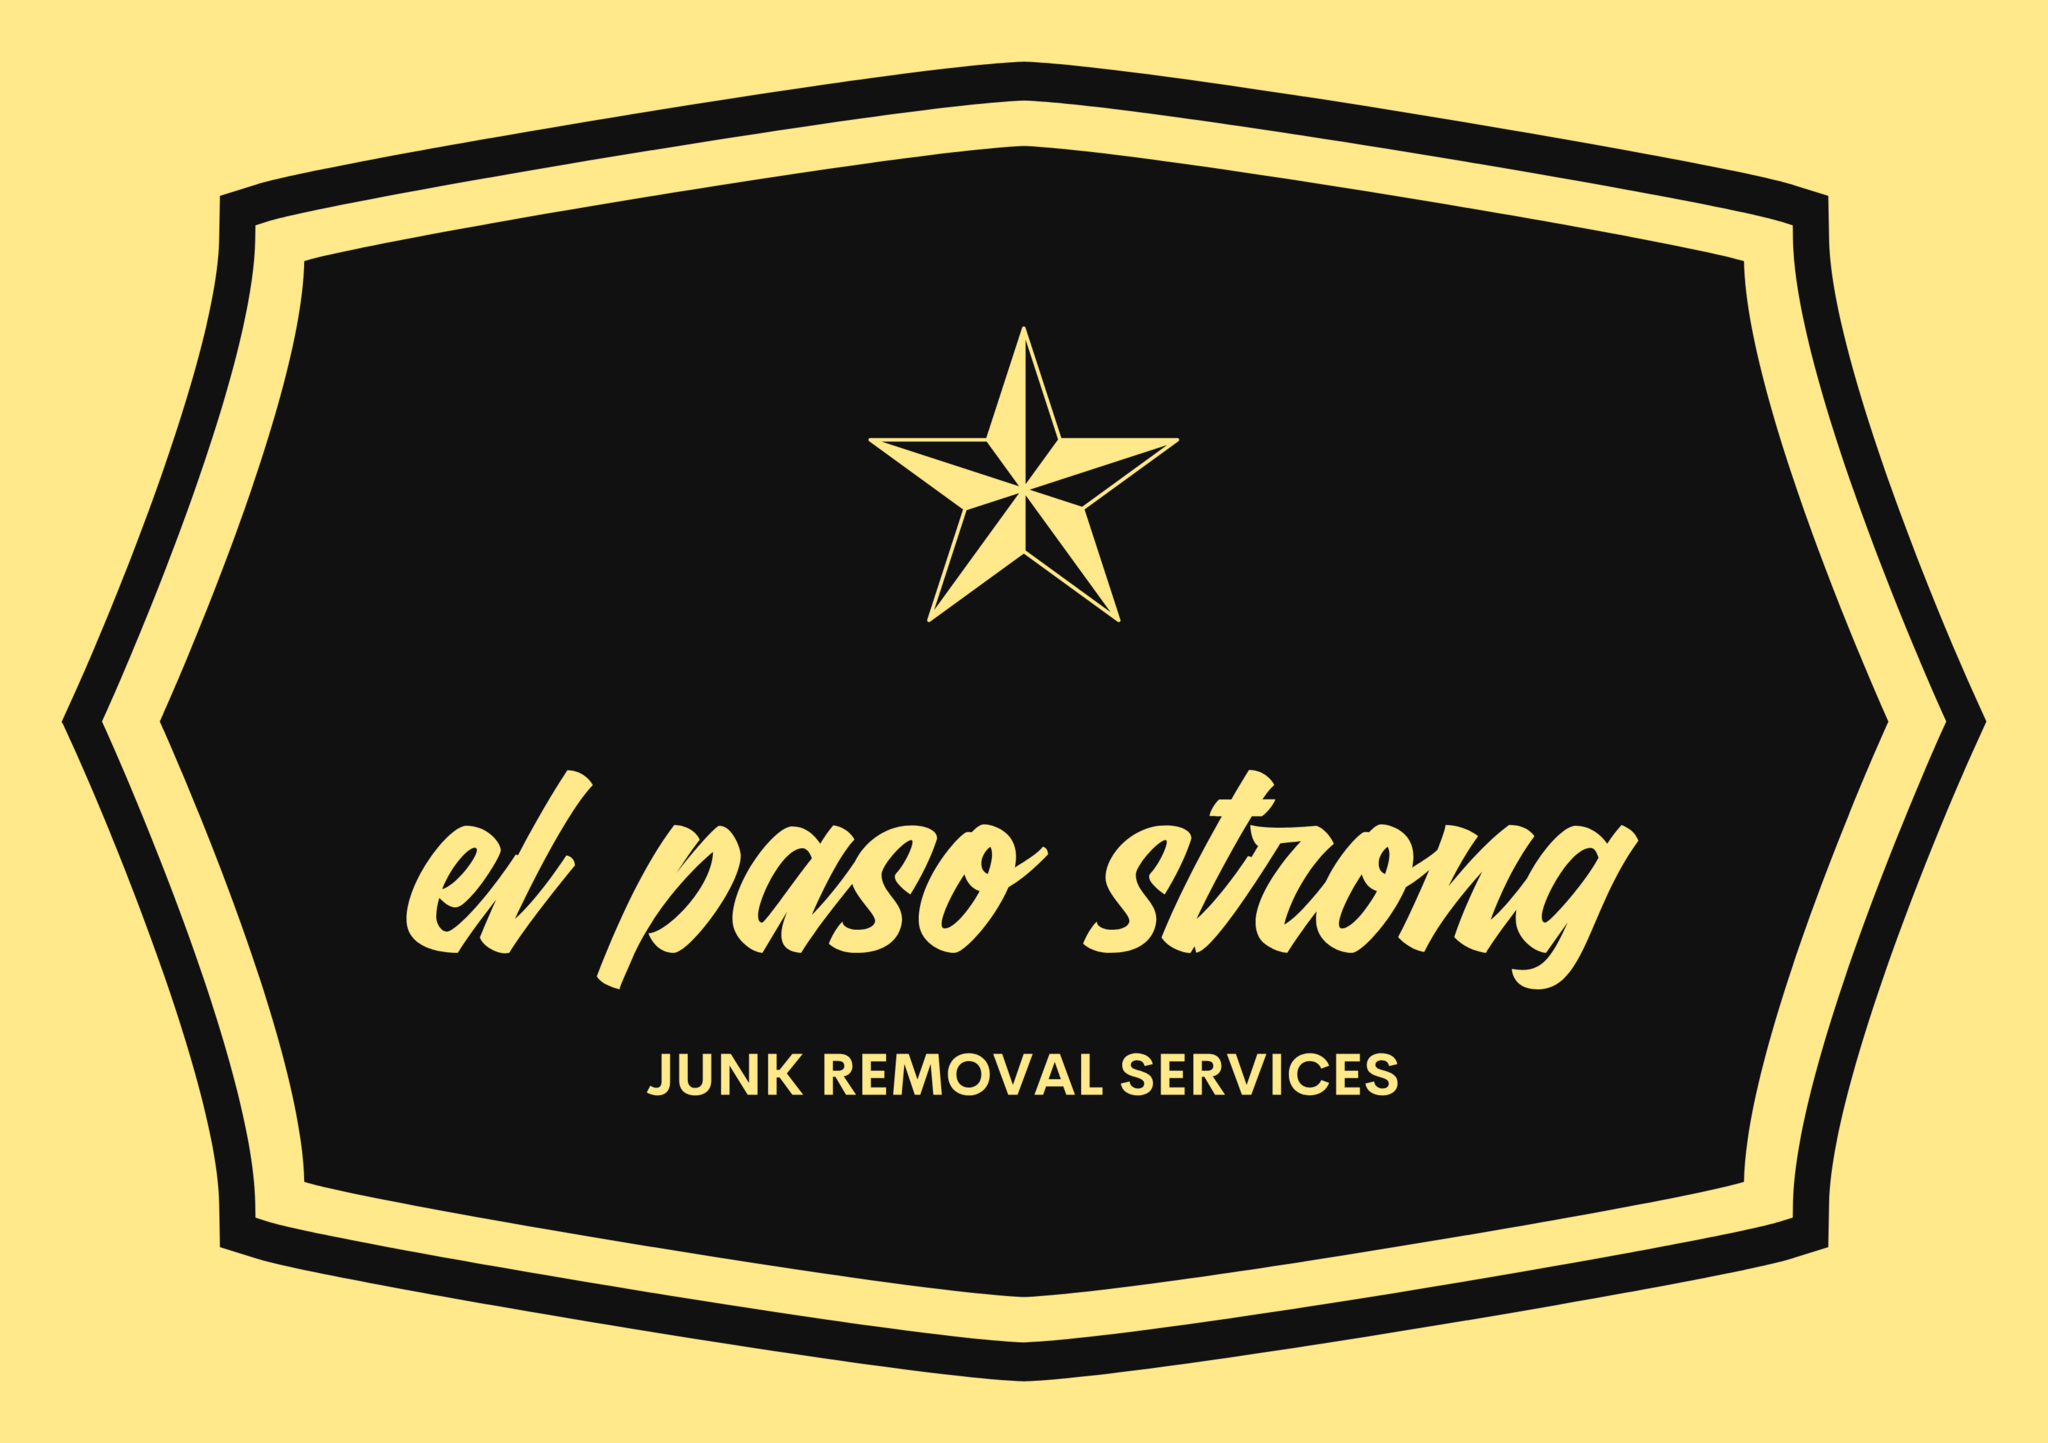 El Paso Strong Junk Removal Services - El Paso, TX